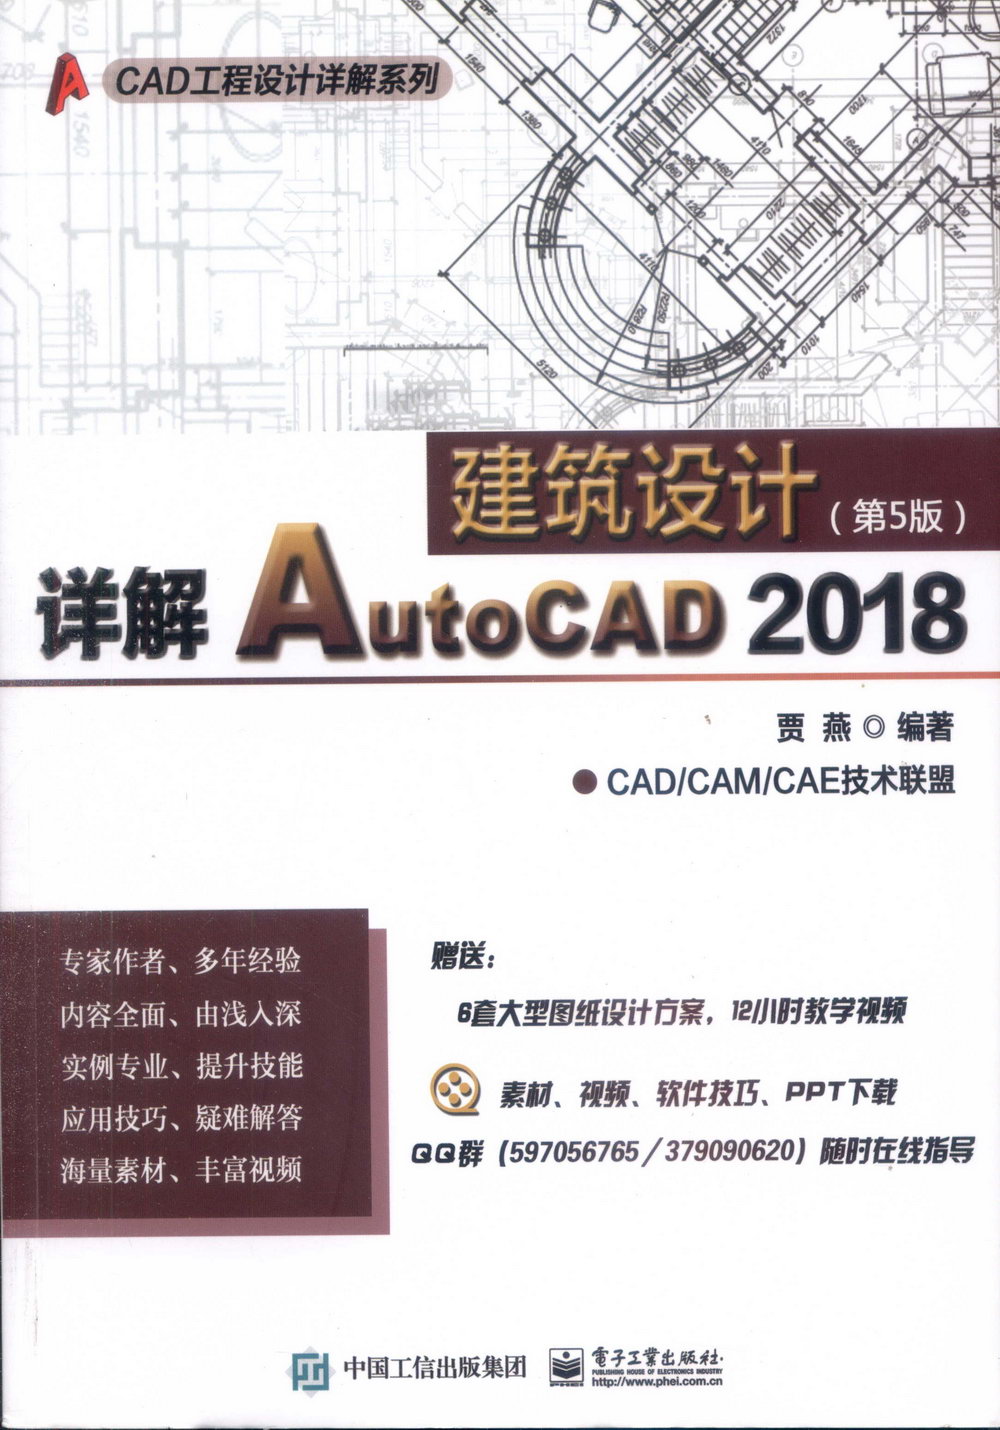 詳解AutoCAD 2018建築設計（第5版）